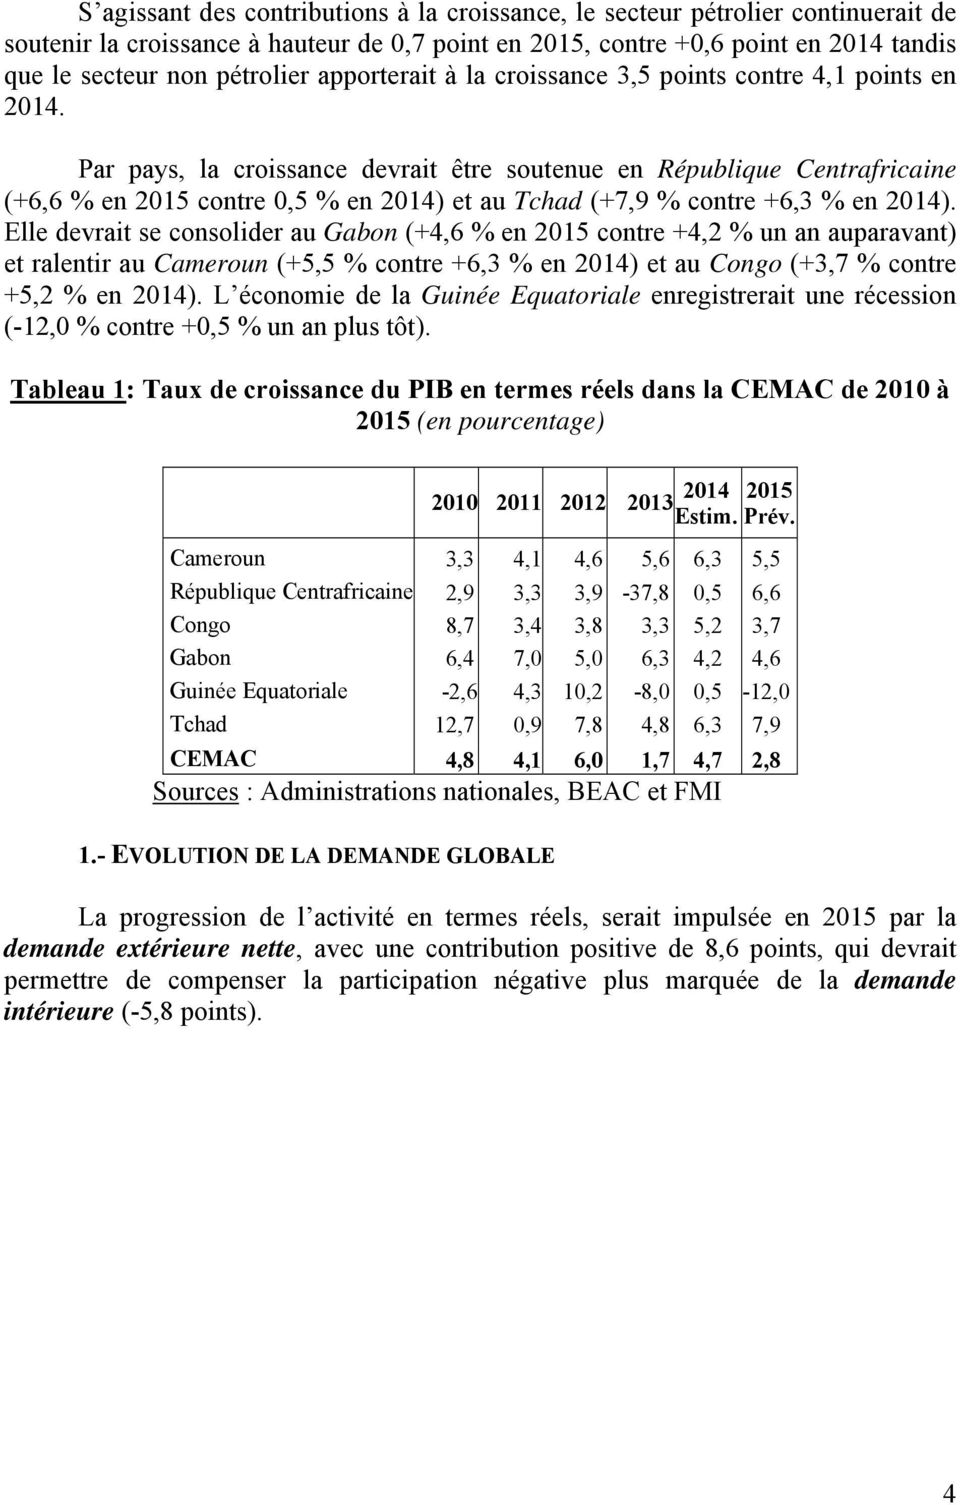 Par pays, la croissance devrait être soutenue en République Centrafricaine (+6,6 % en 2015 contre 0,5 % en 2014) et au Tchad (+7,9 % contre +6,3 % en 2014).